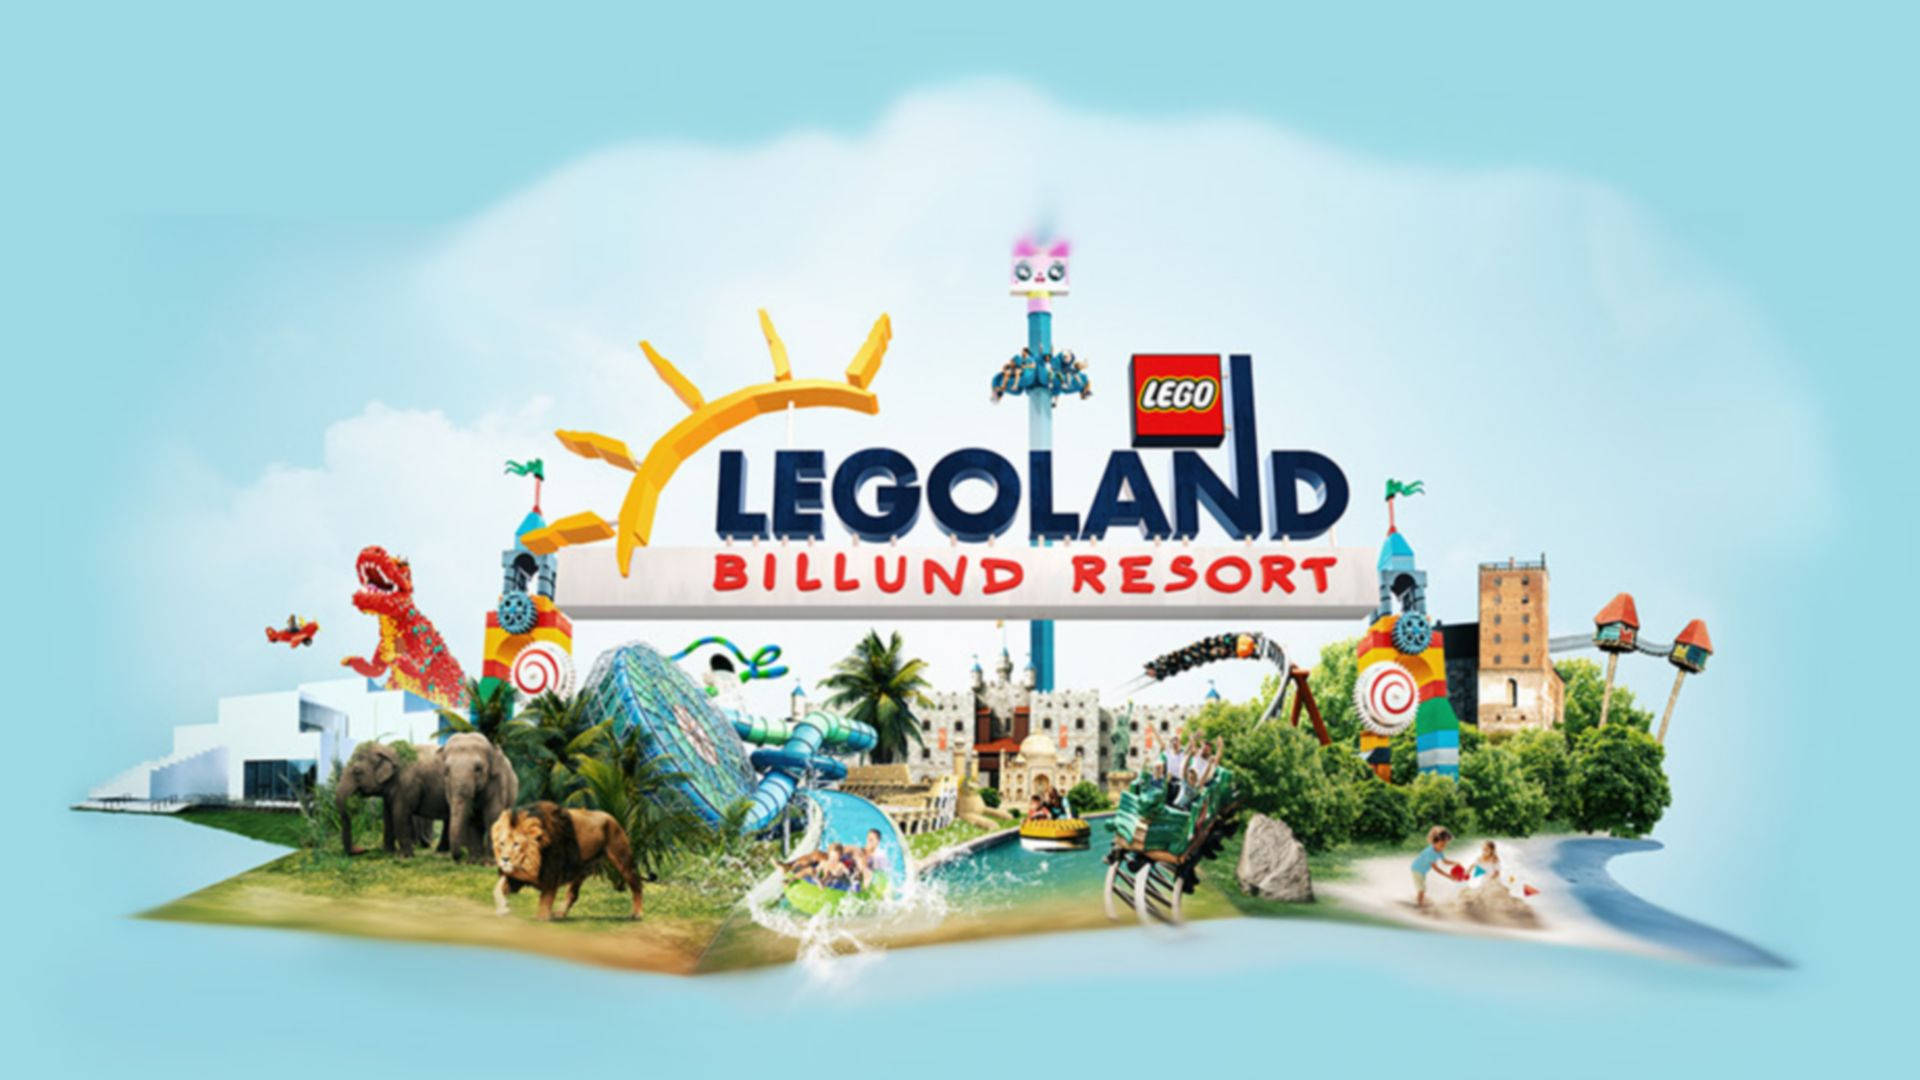 Legoland Billund Resort Wallpaper